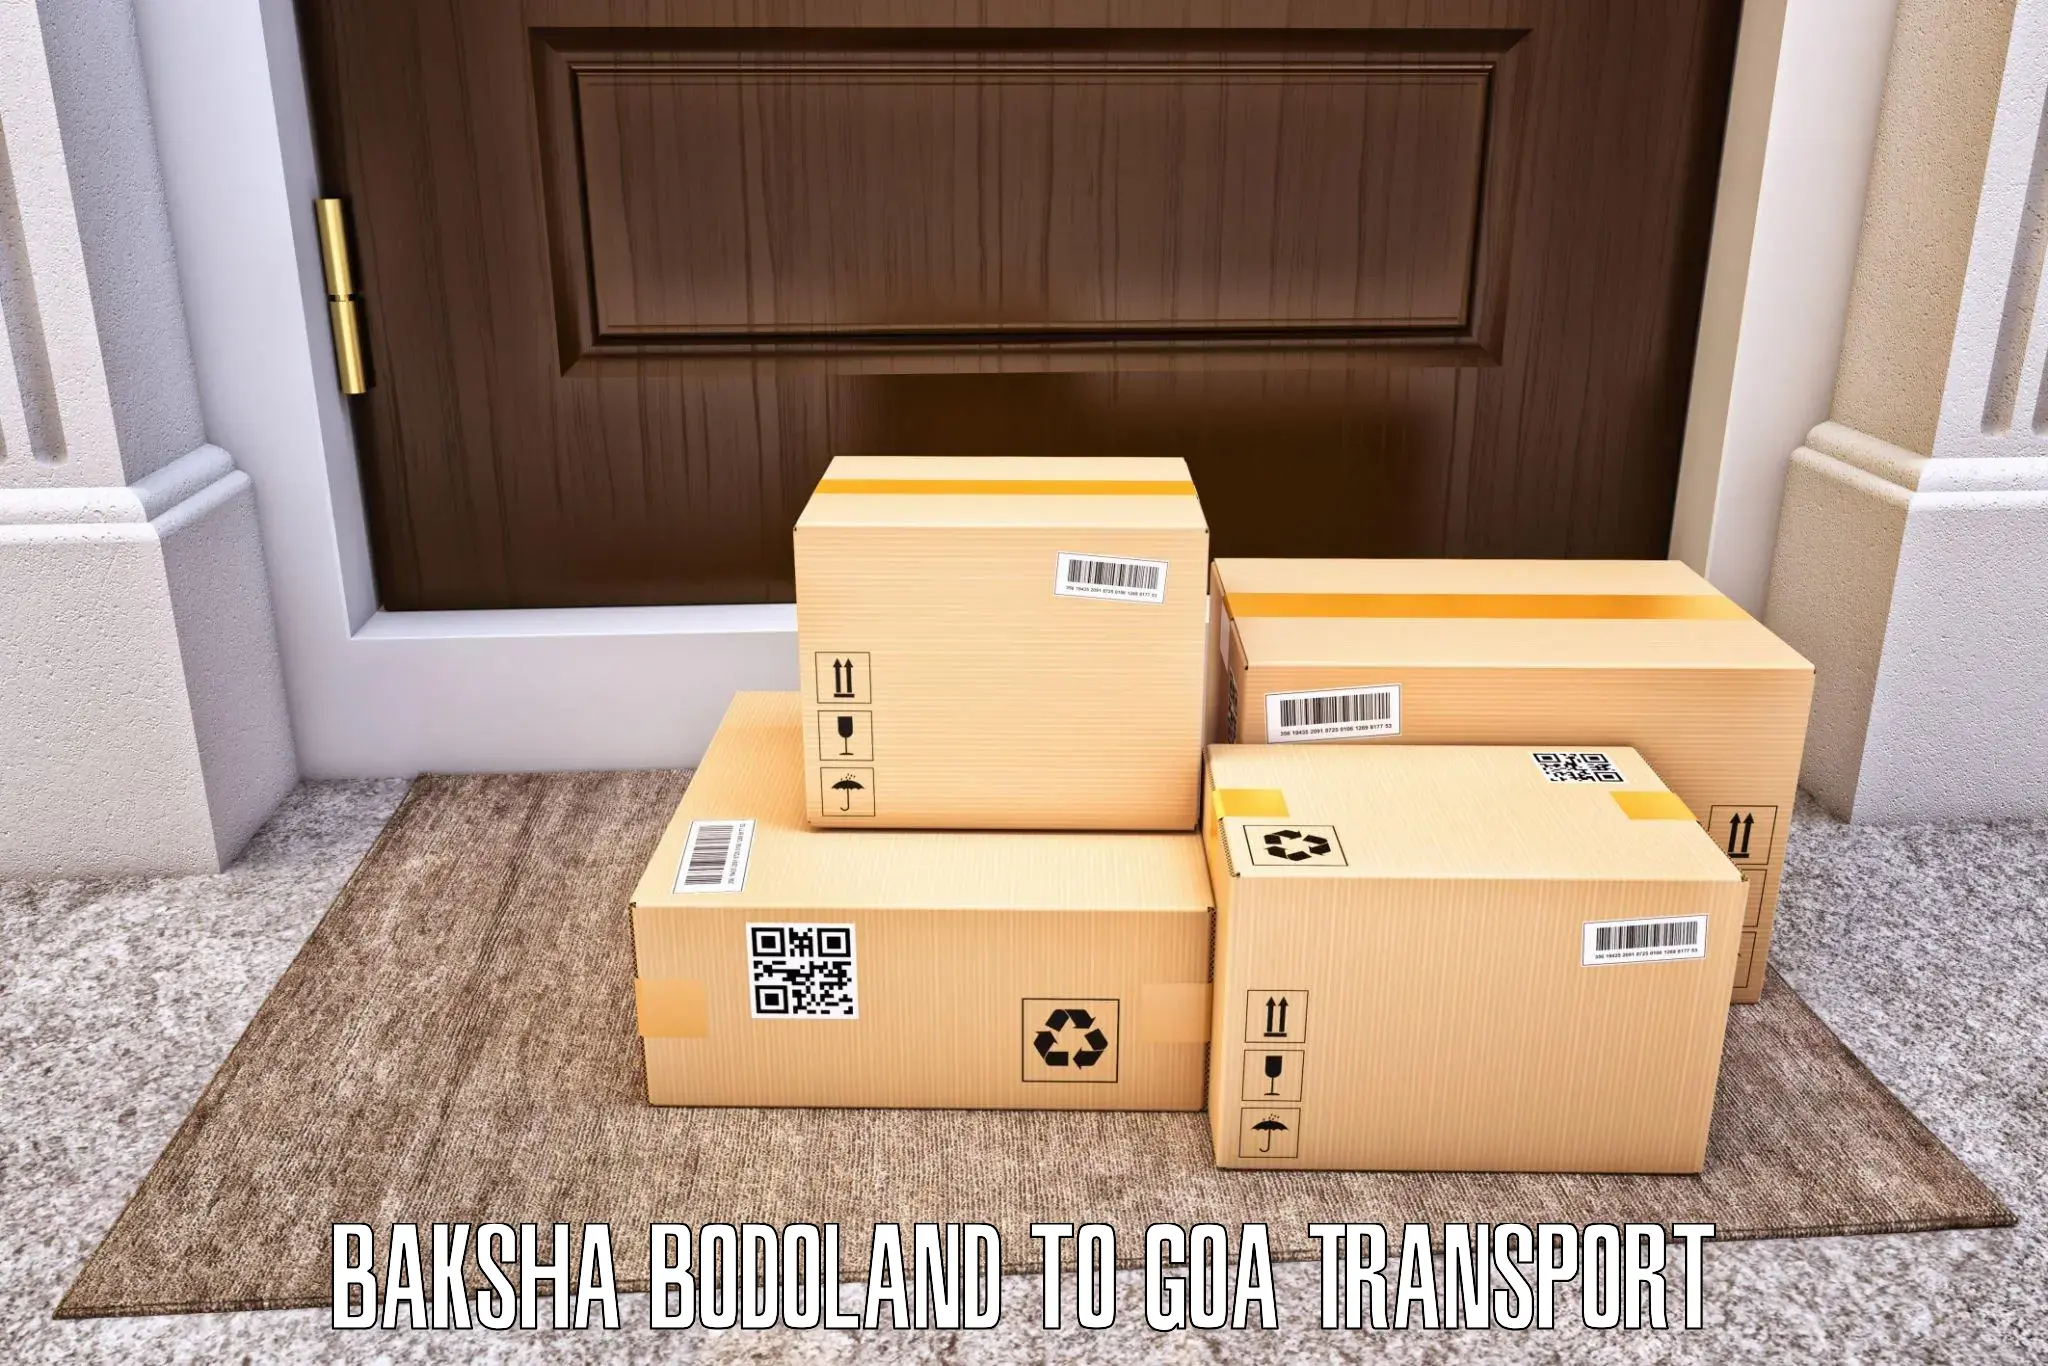 India truck logistics services Baksha Bodoland to Vasco da Gama